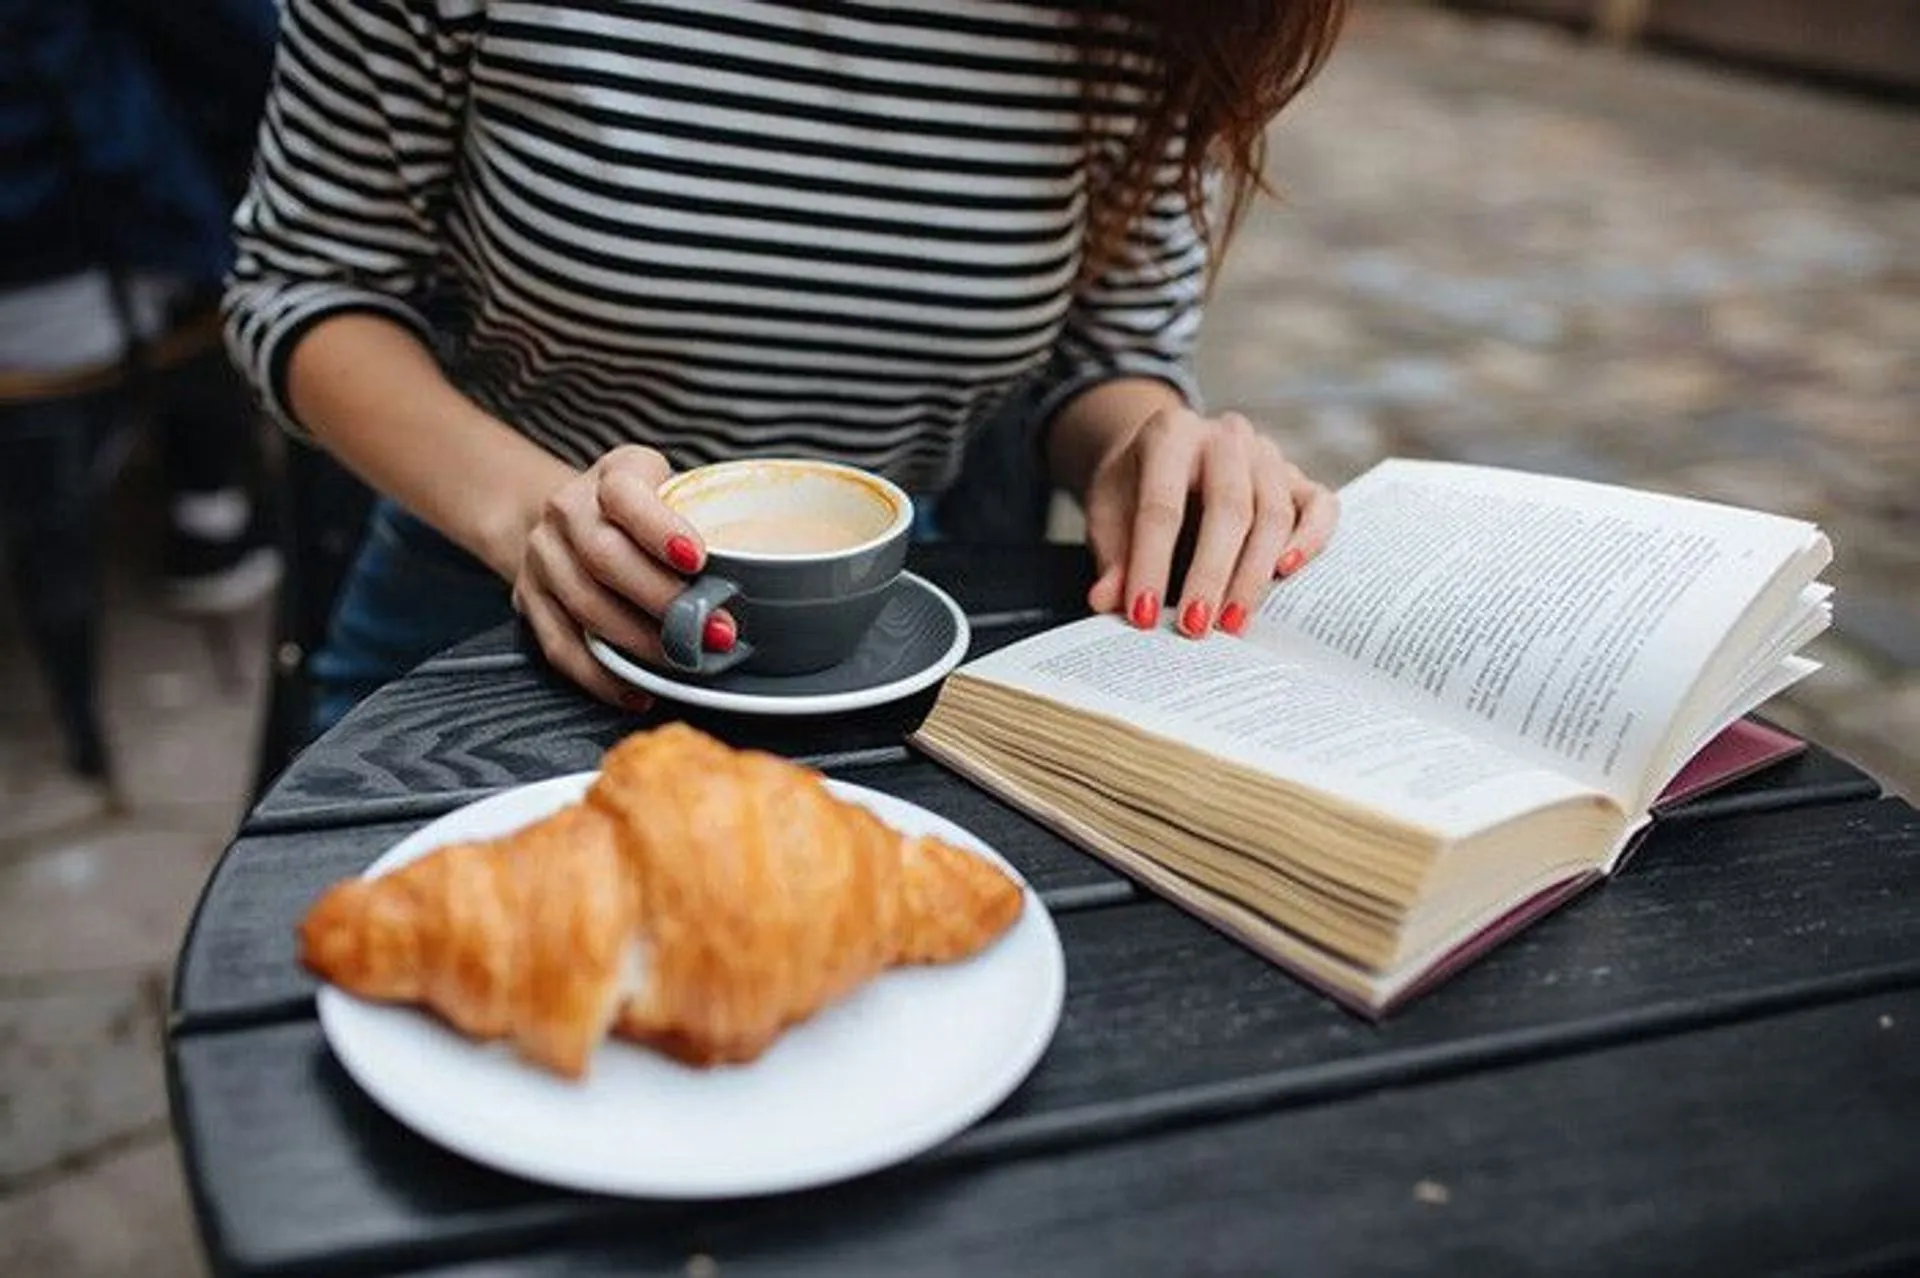 mujer-joven-tomando-cafe-leyendo-libro-terraza-cafe_247147-1087.jpg